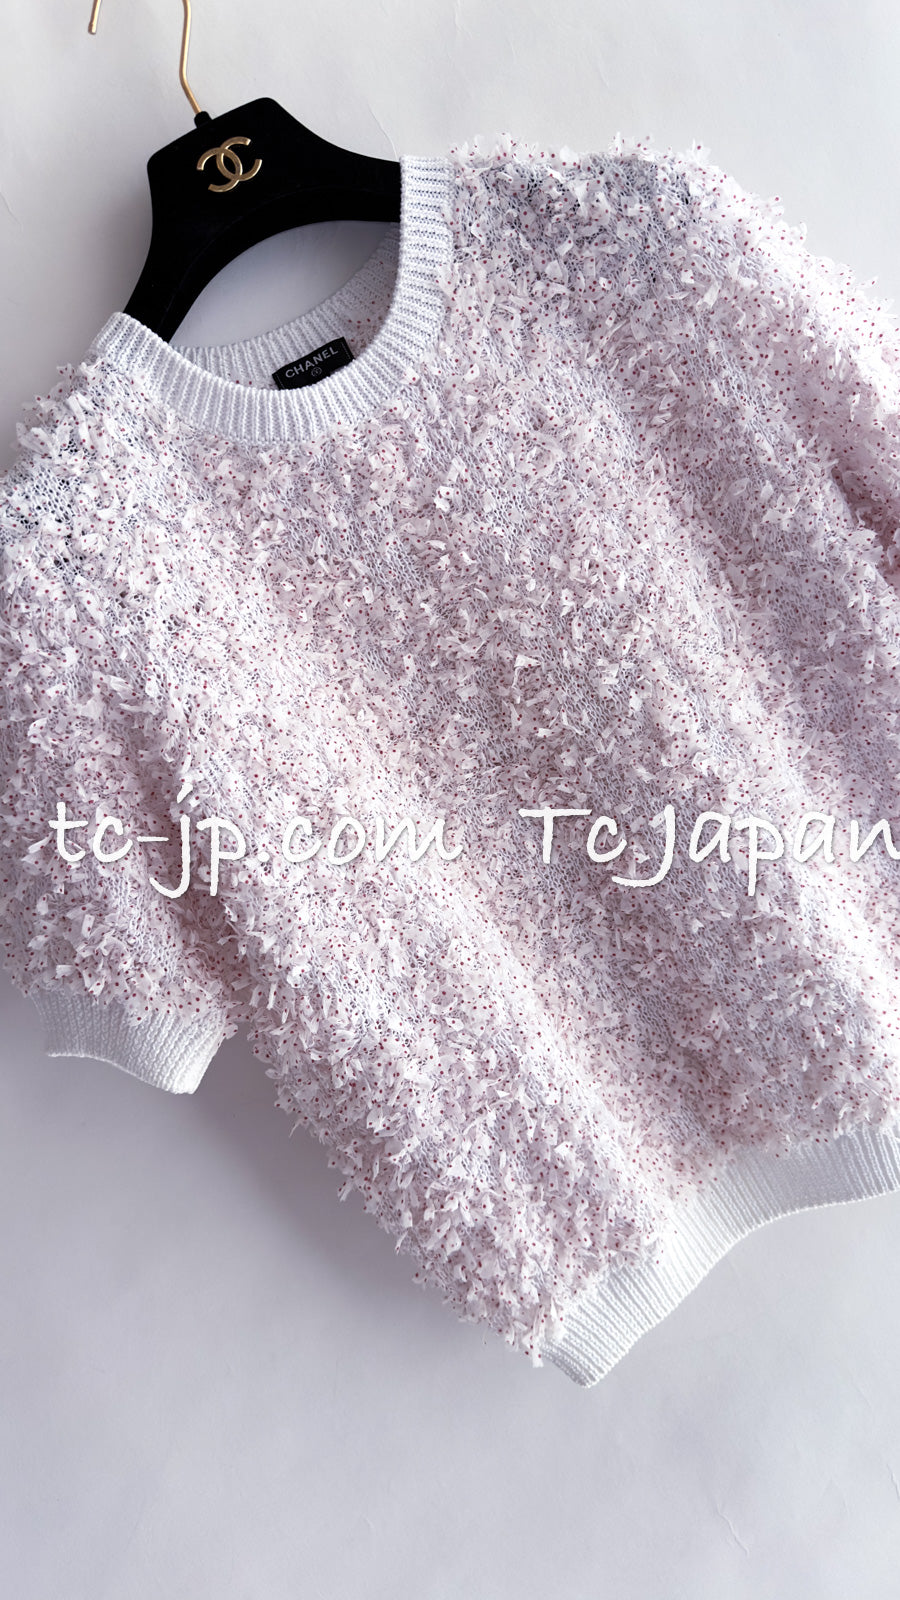 シャネル セーター トップス CHANEL Sweater Tops【正規品・専門店